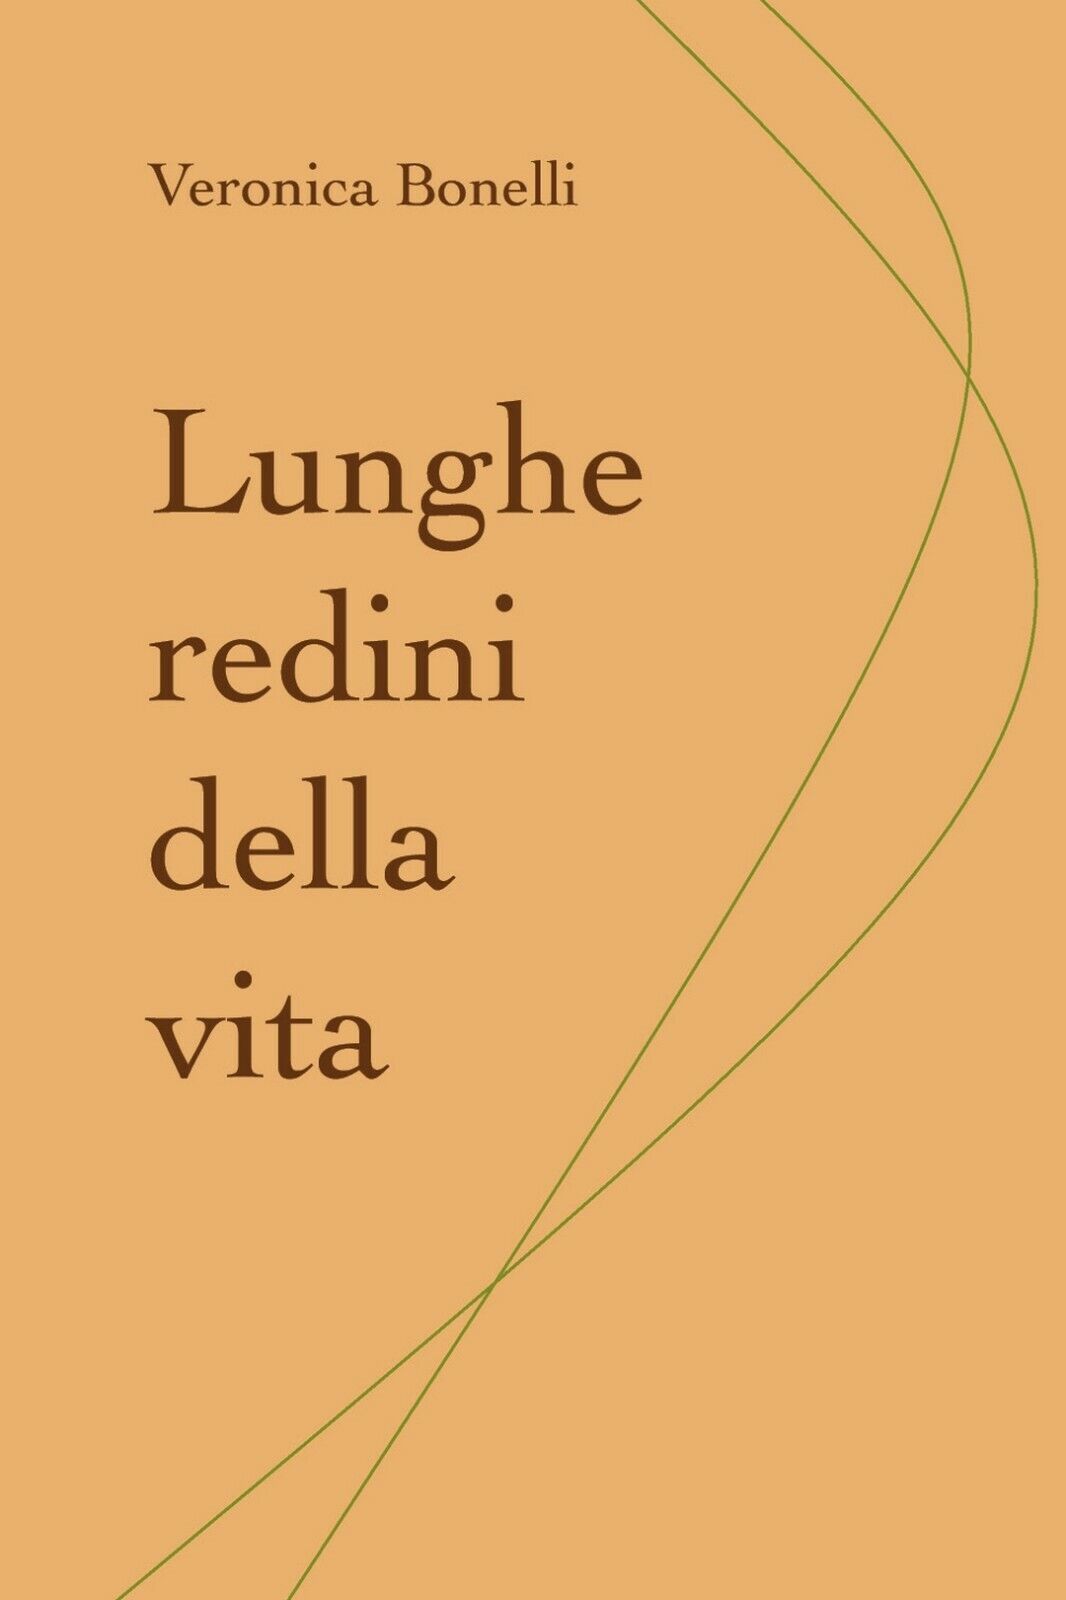 Lunghe redini della vita  di Veronica Bonelli,  2019,  Youcanprint